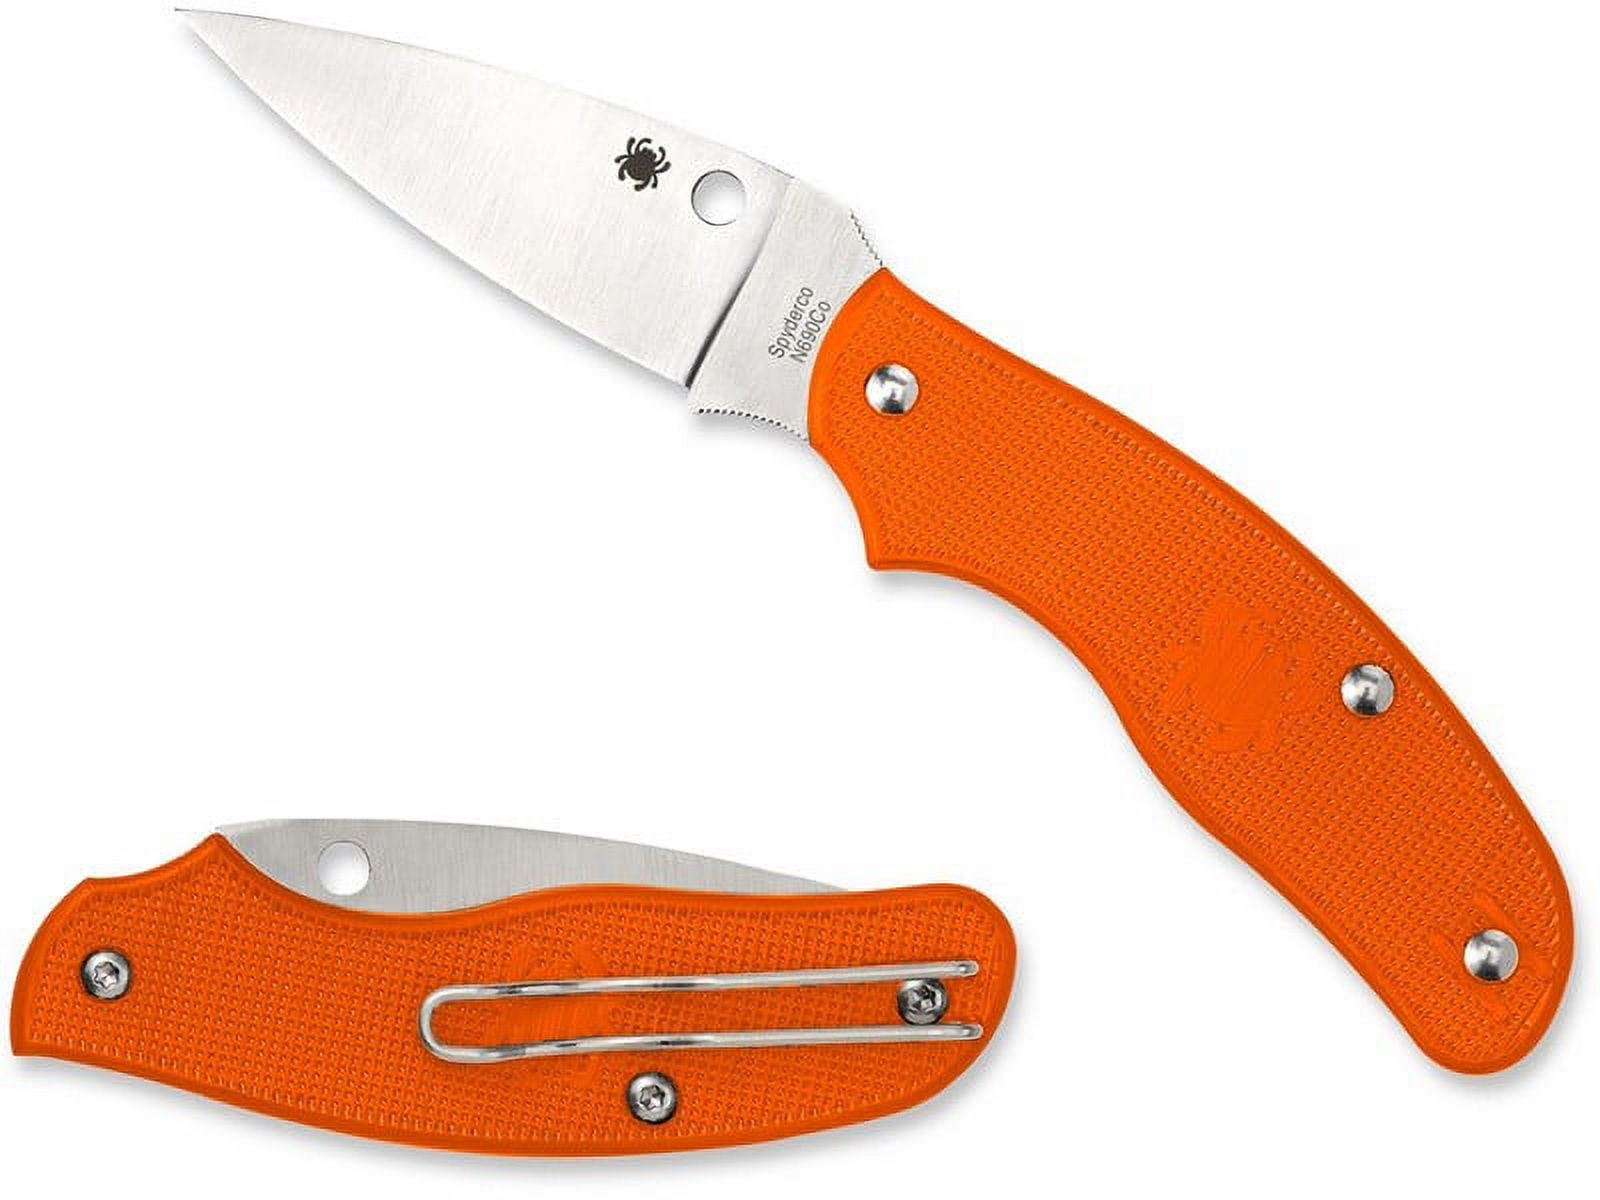 SPYDERCO SPY-DK KNIFE 2.69 STEEL FOLDING FIBERGLASS